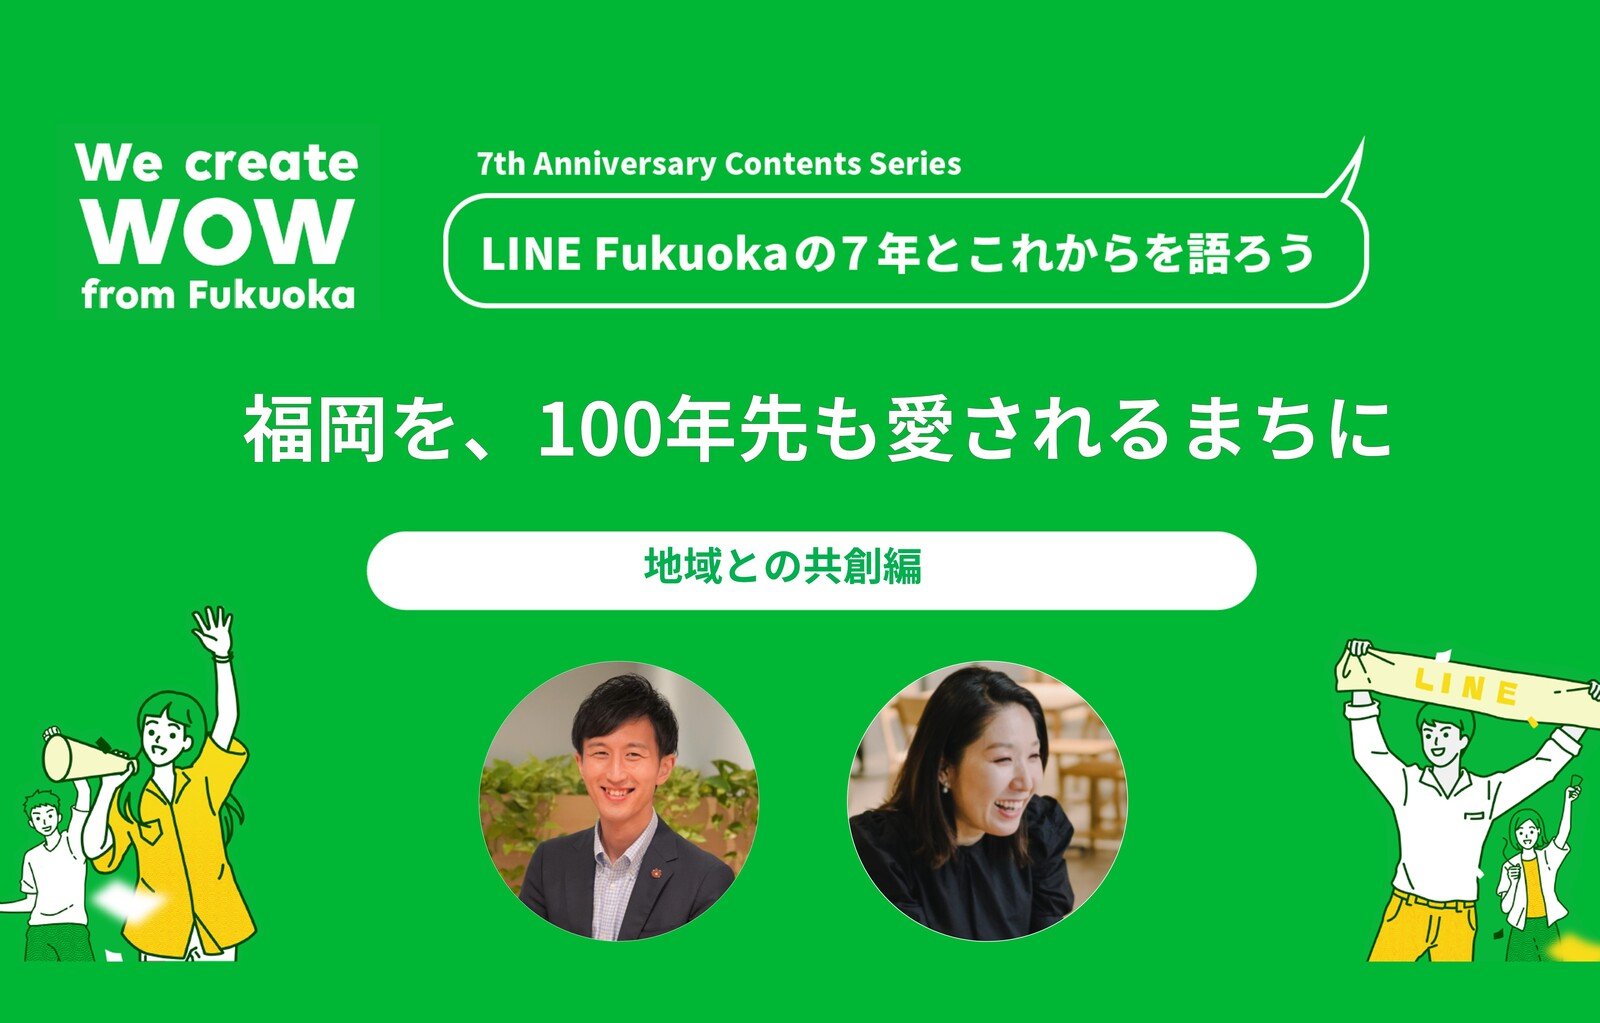 福岡が、100年先も愛されるまちであってほしい―LINE Fukuoka「地域との共創」の7年とこれから サムネイル画像